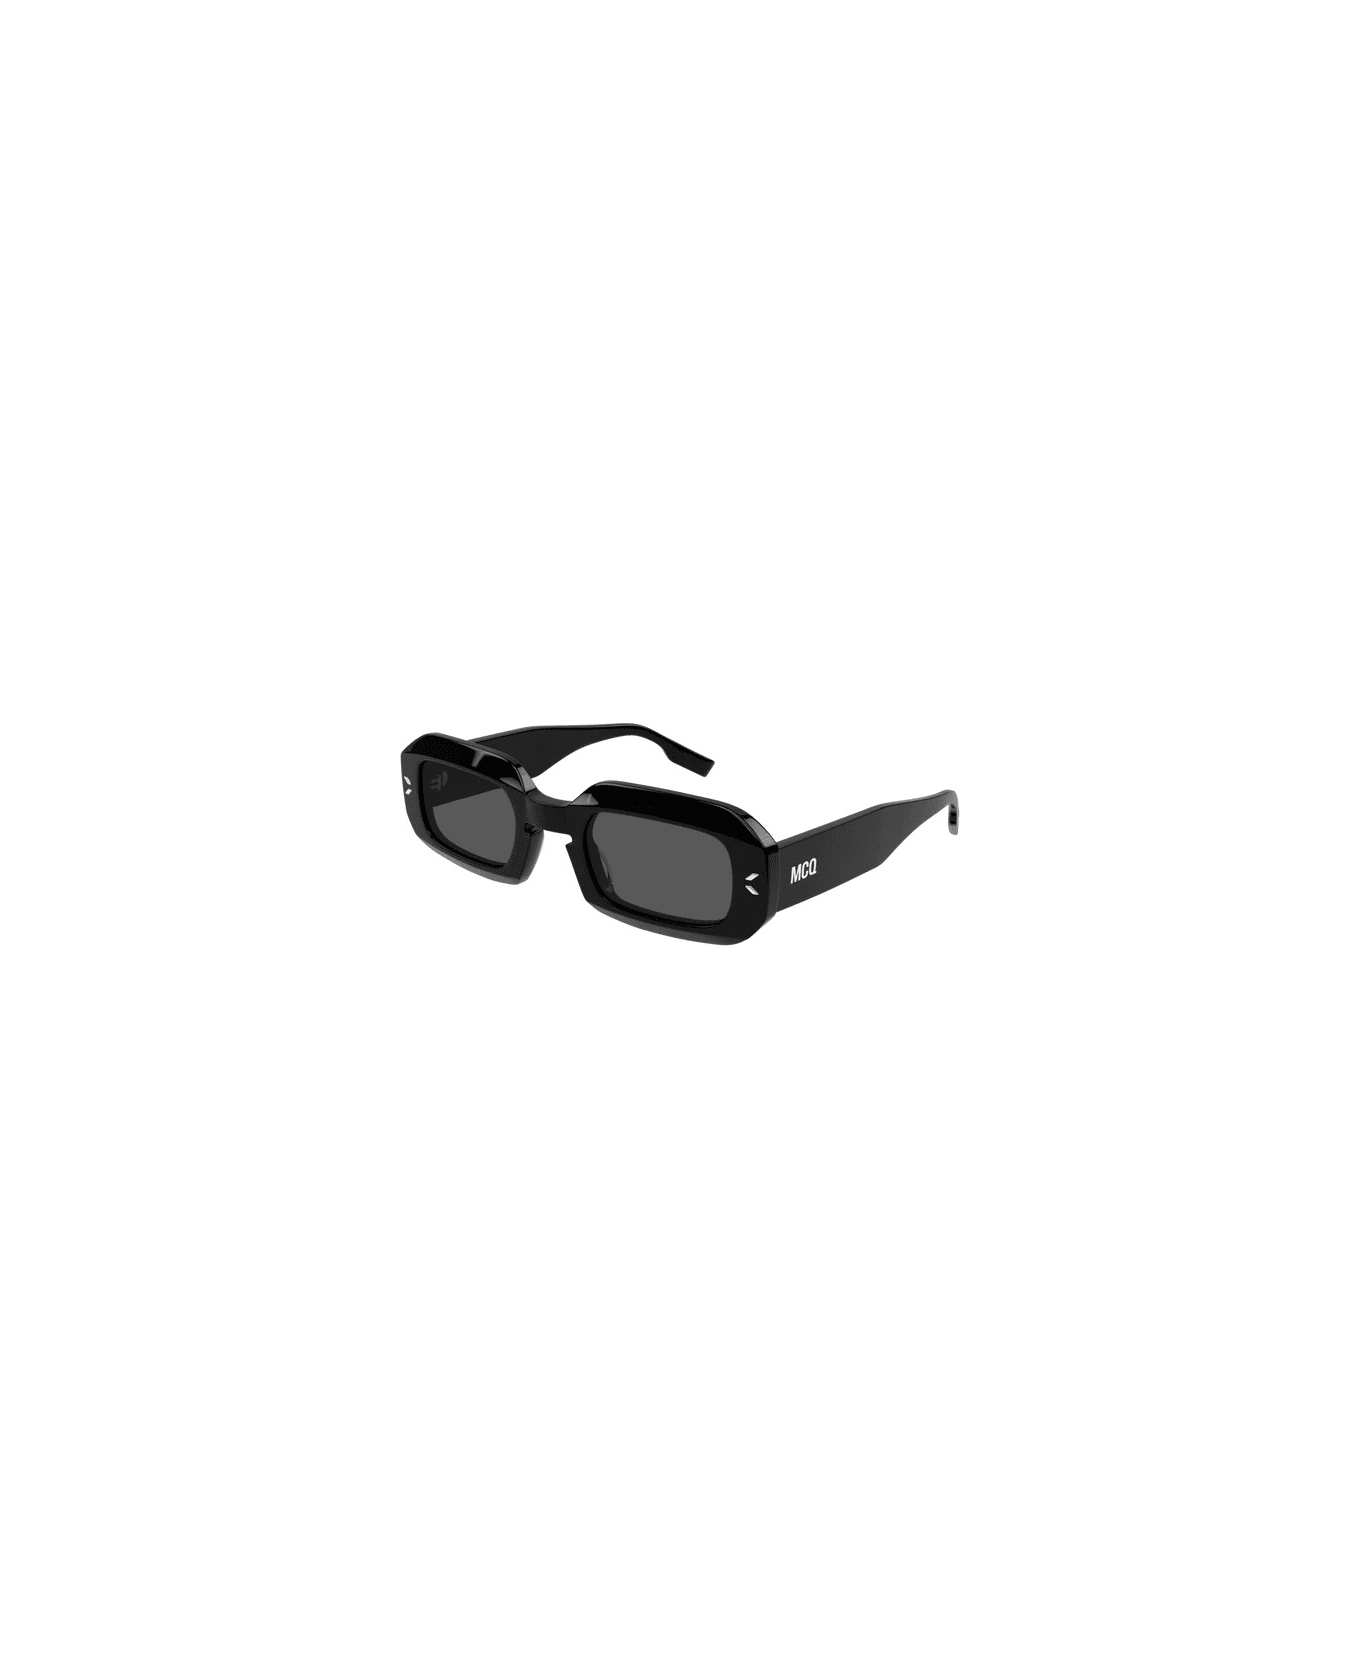 McQ Alexander McQueen MQ361s 001 Sunglasses